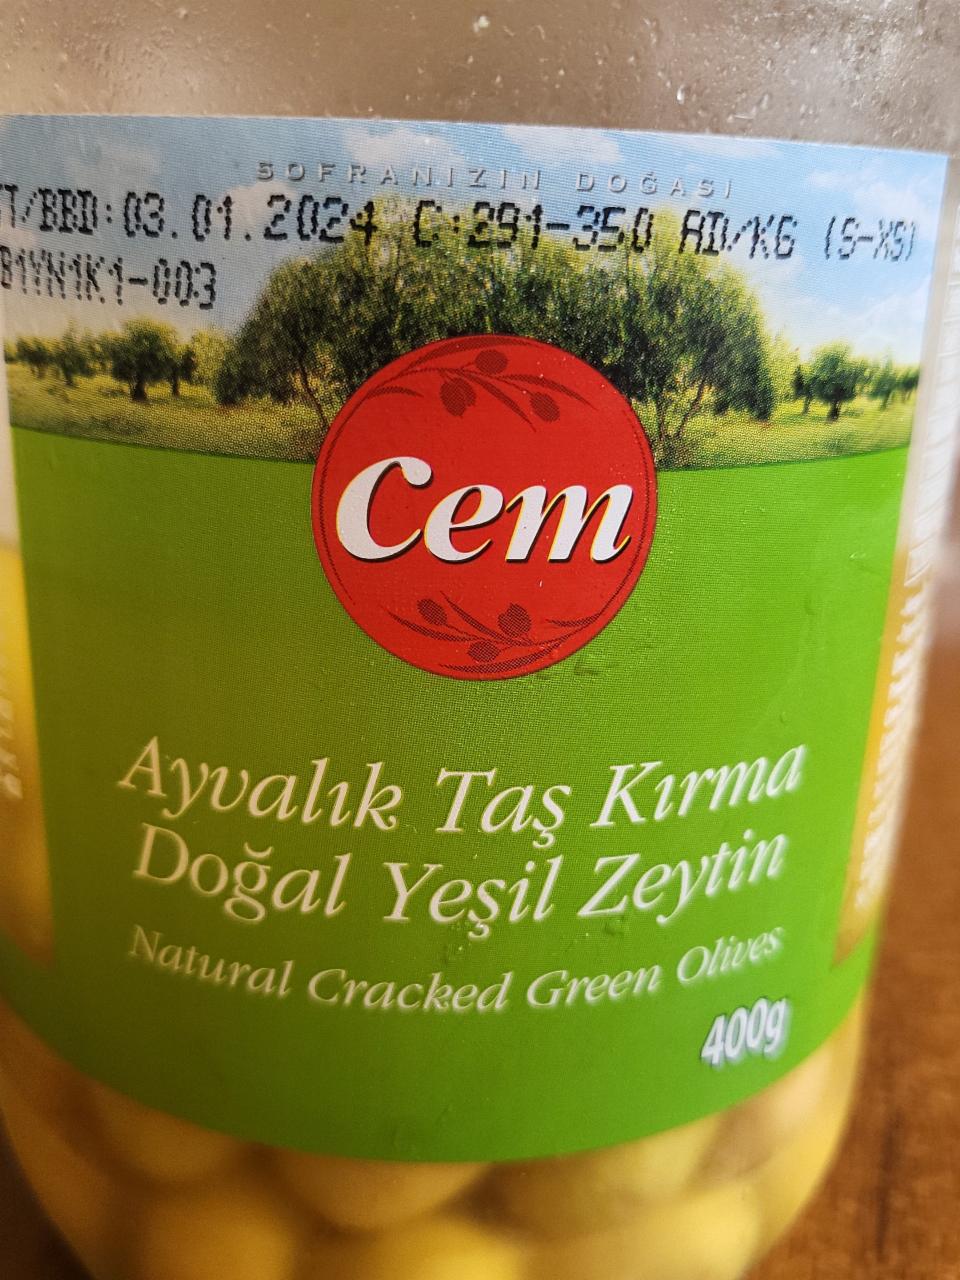 Фото - оливки зеленые Ayvalik tas kirma Сem